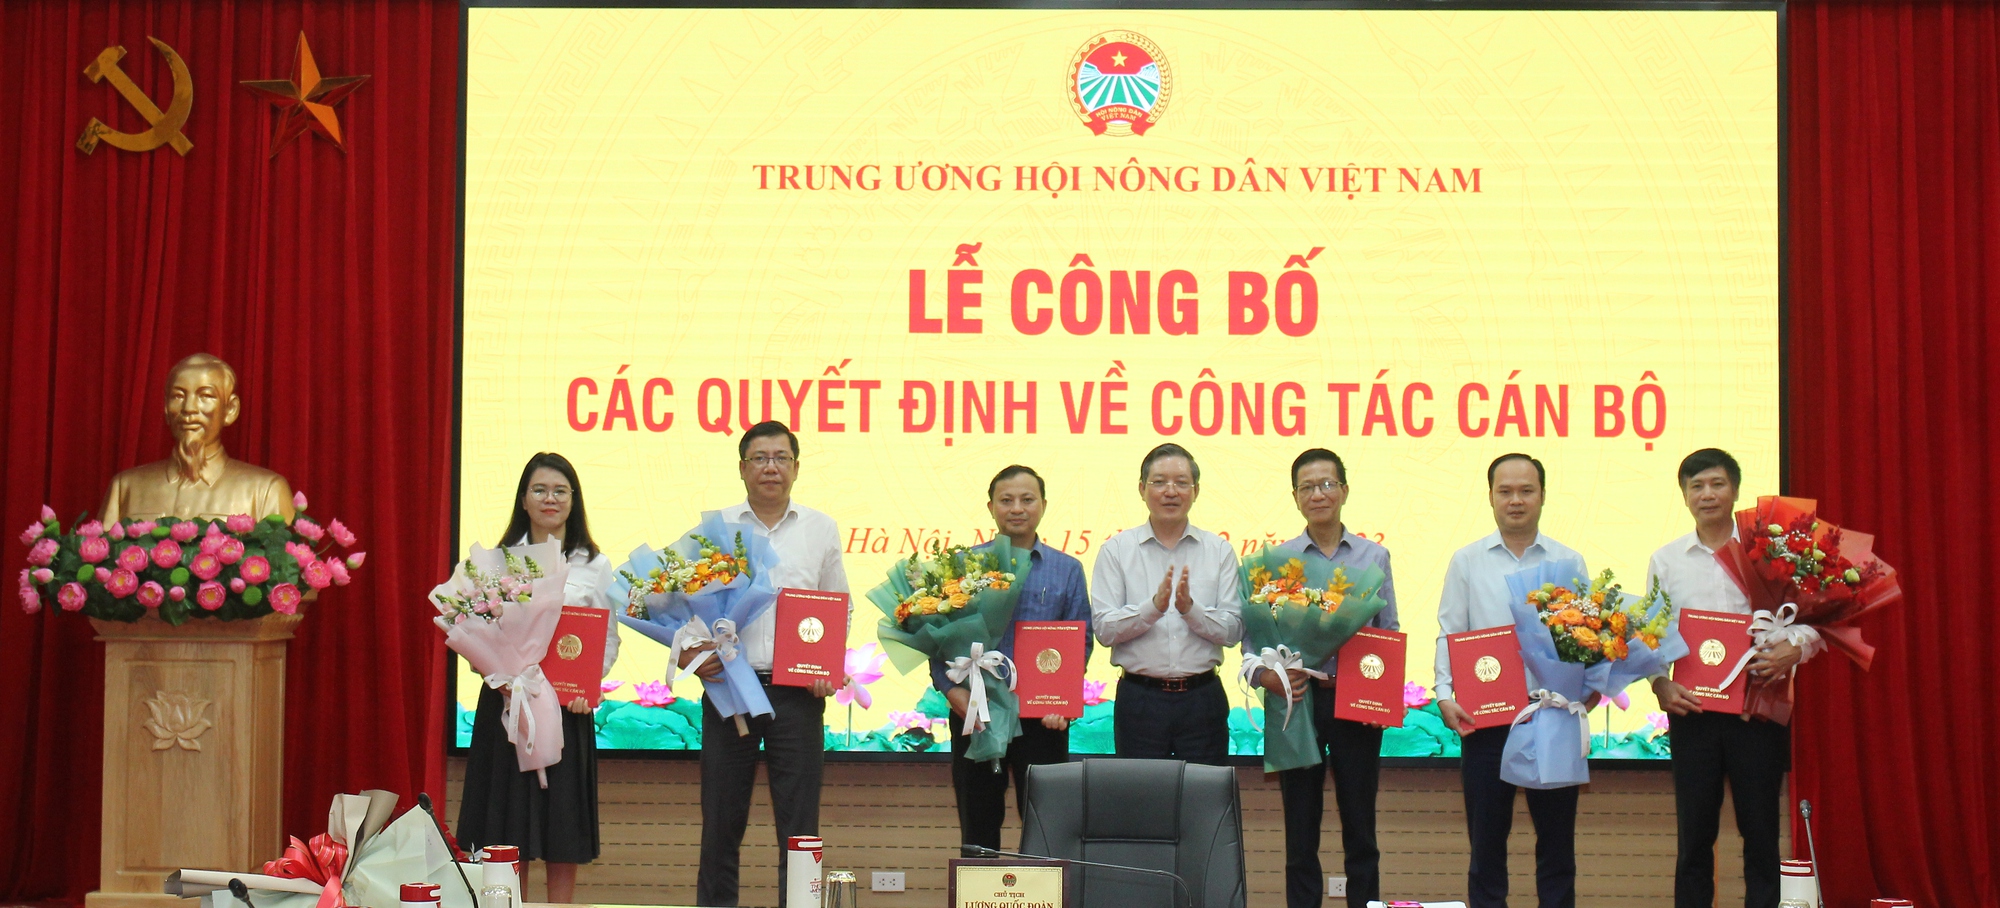 Trung ương Hội Nông dân Việt Nam trao Quyết định về công tác cán bộ cho 6 đồng chí - Ảnh 1.